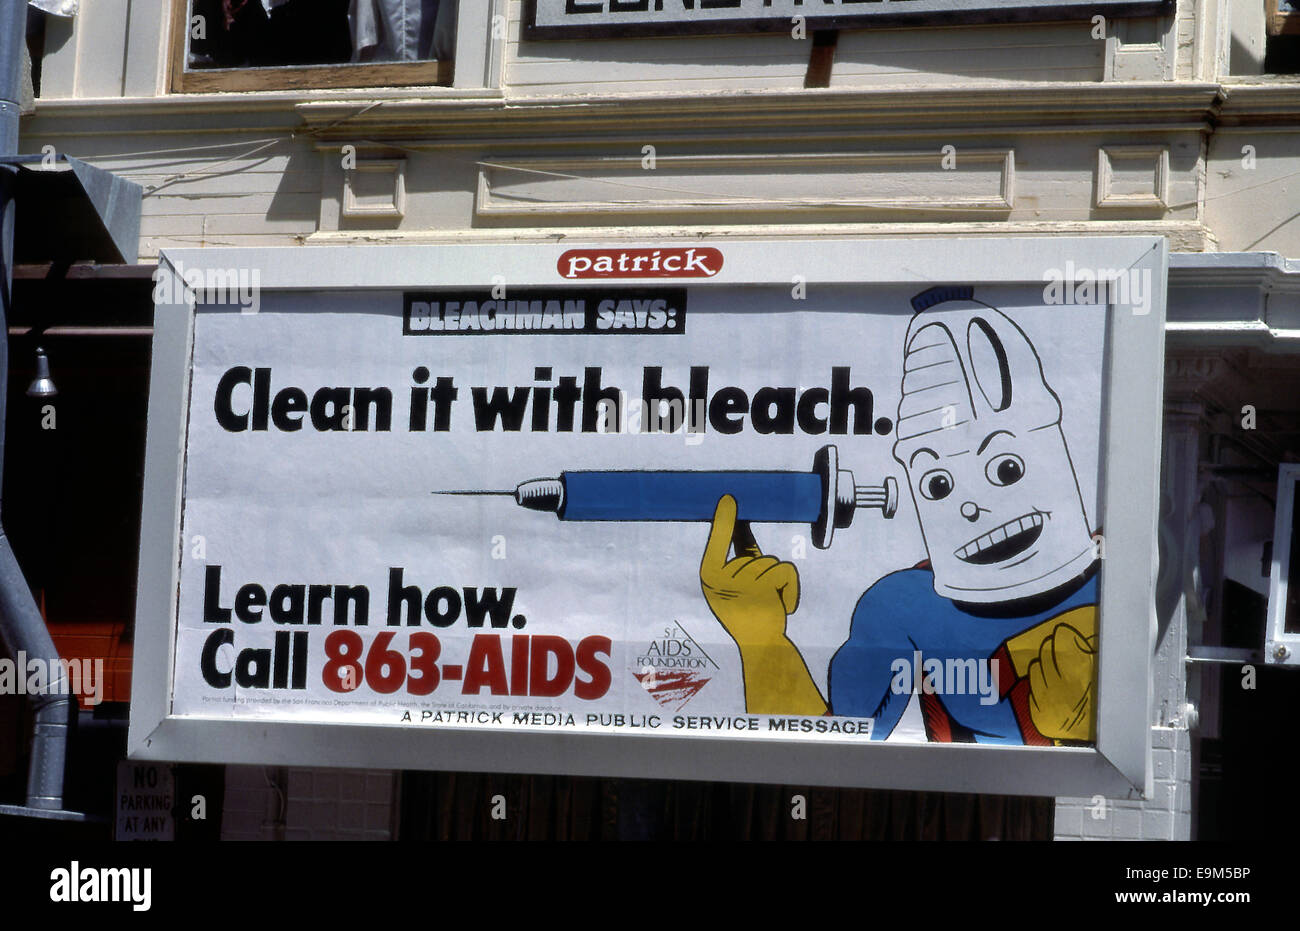 Affissioni con un annuncio di servizio pubblico per quanto riguarda la pulizia degli aghi con la candeggina per impedire la trasmissione di AIDS circa 1988 Foto Stock